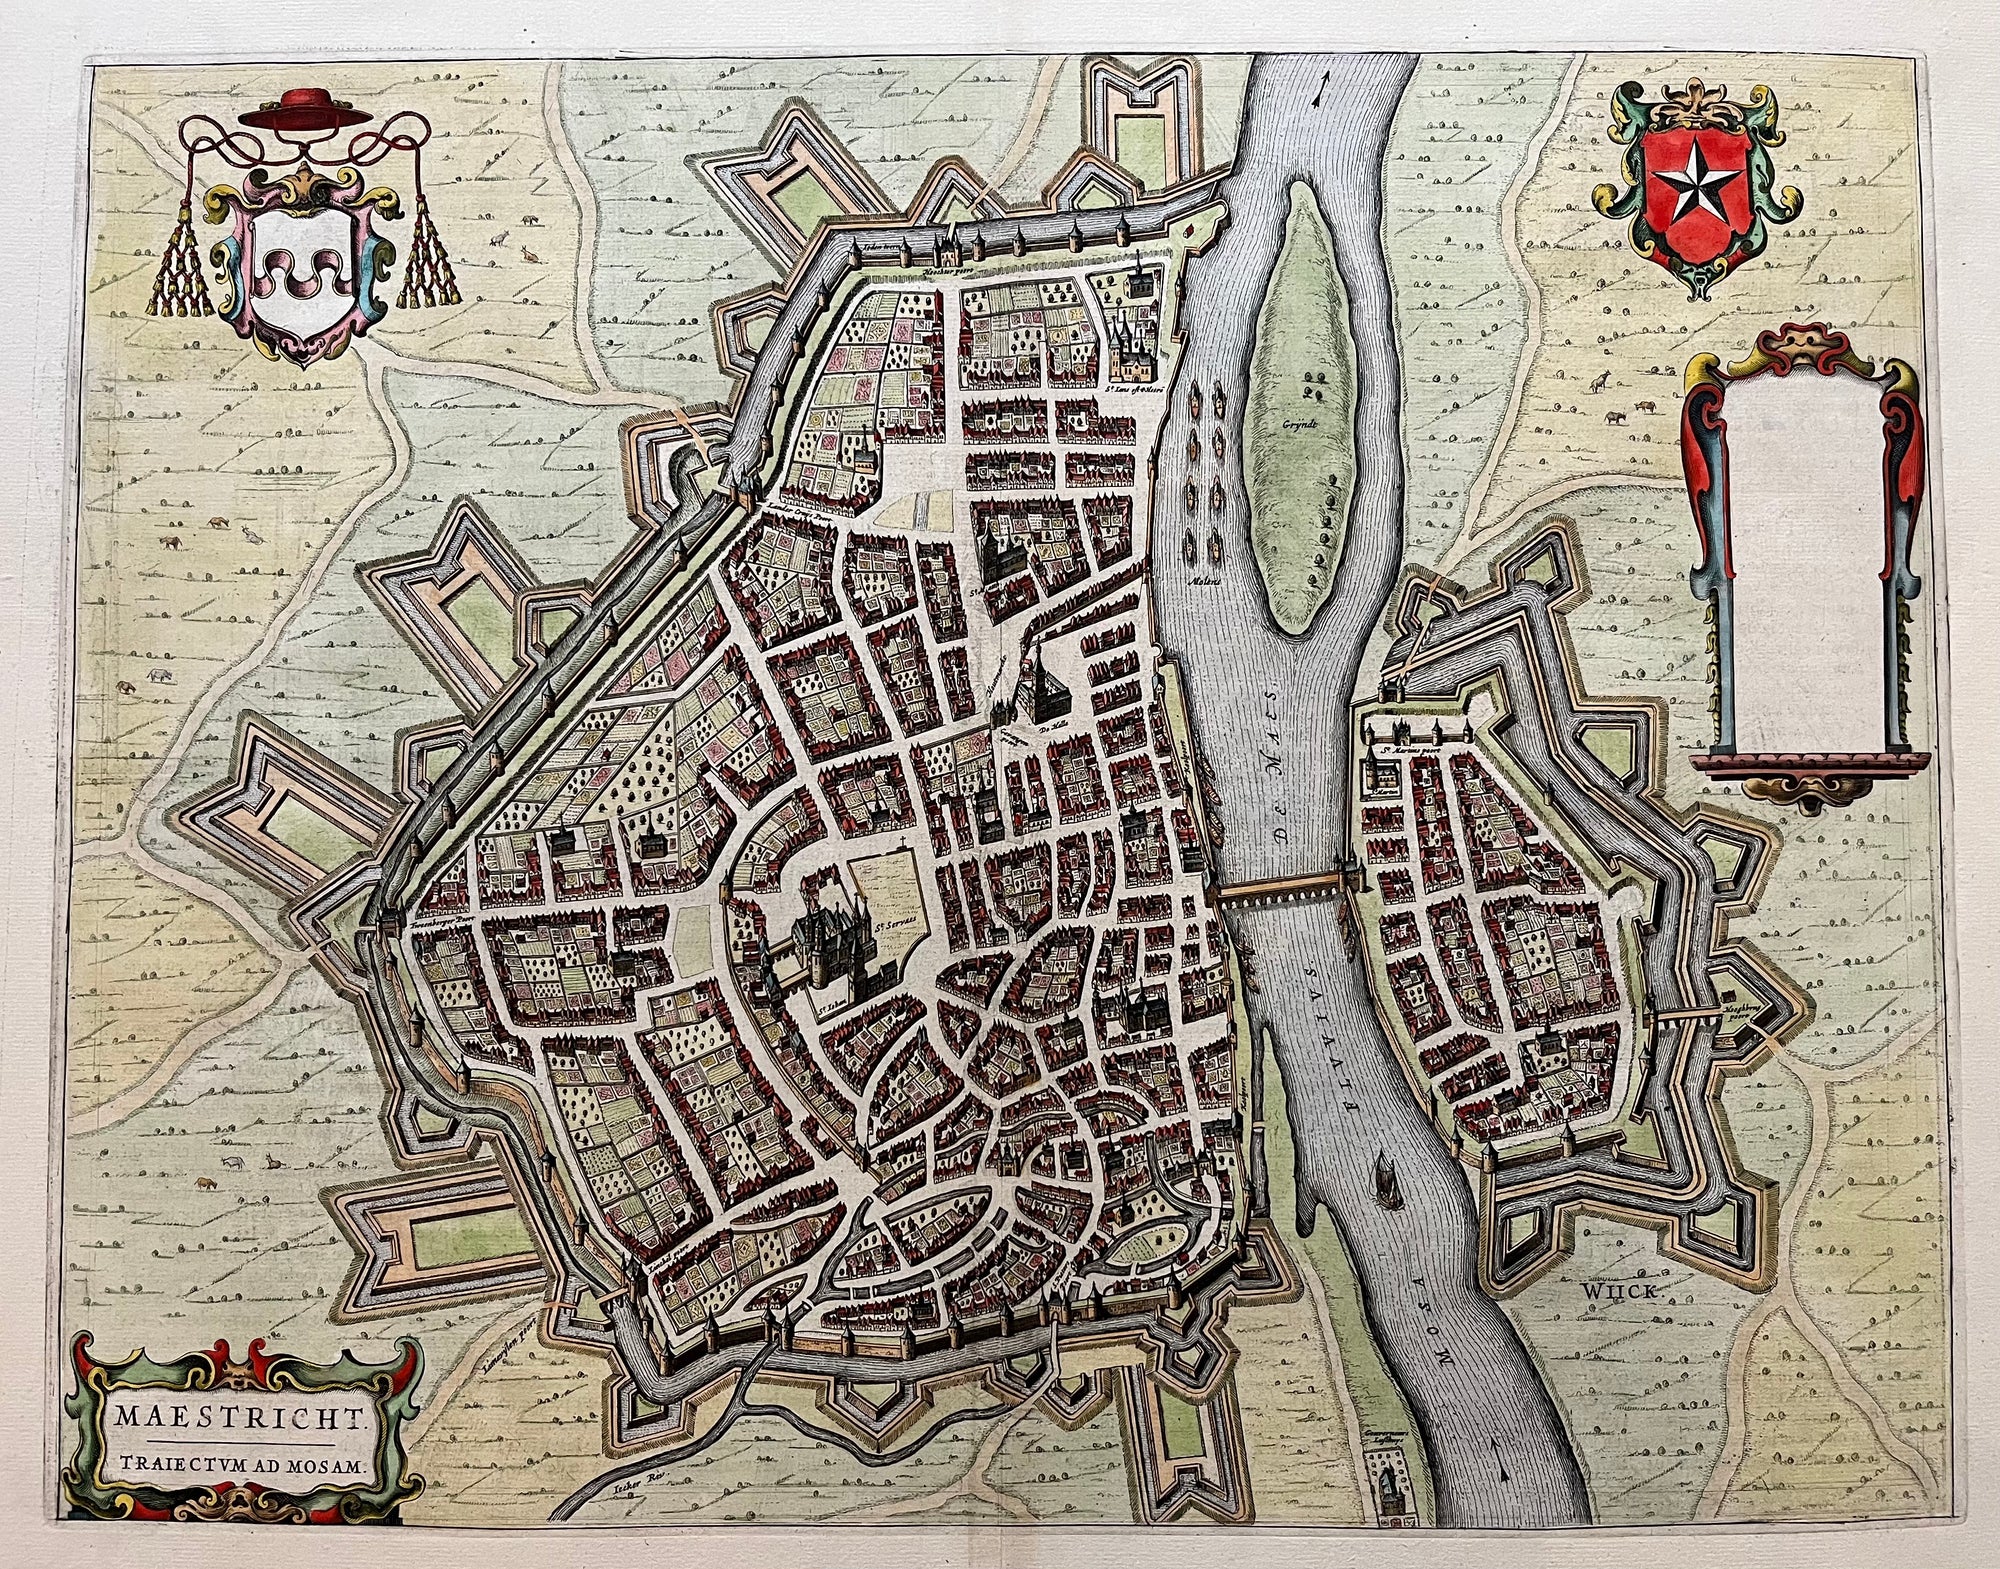 Kaart van Maastricht door Blaeu